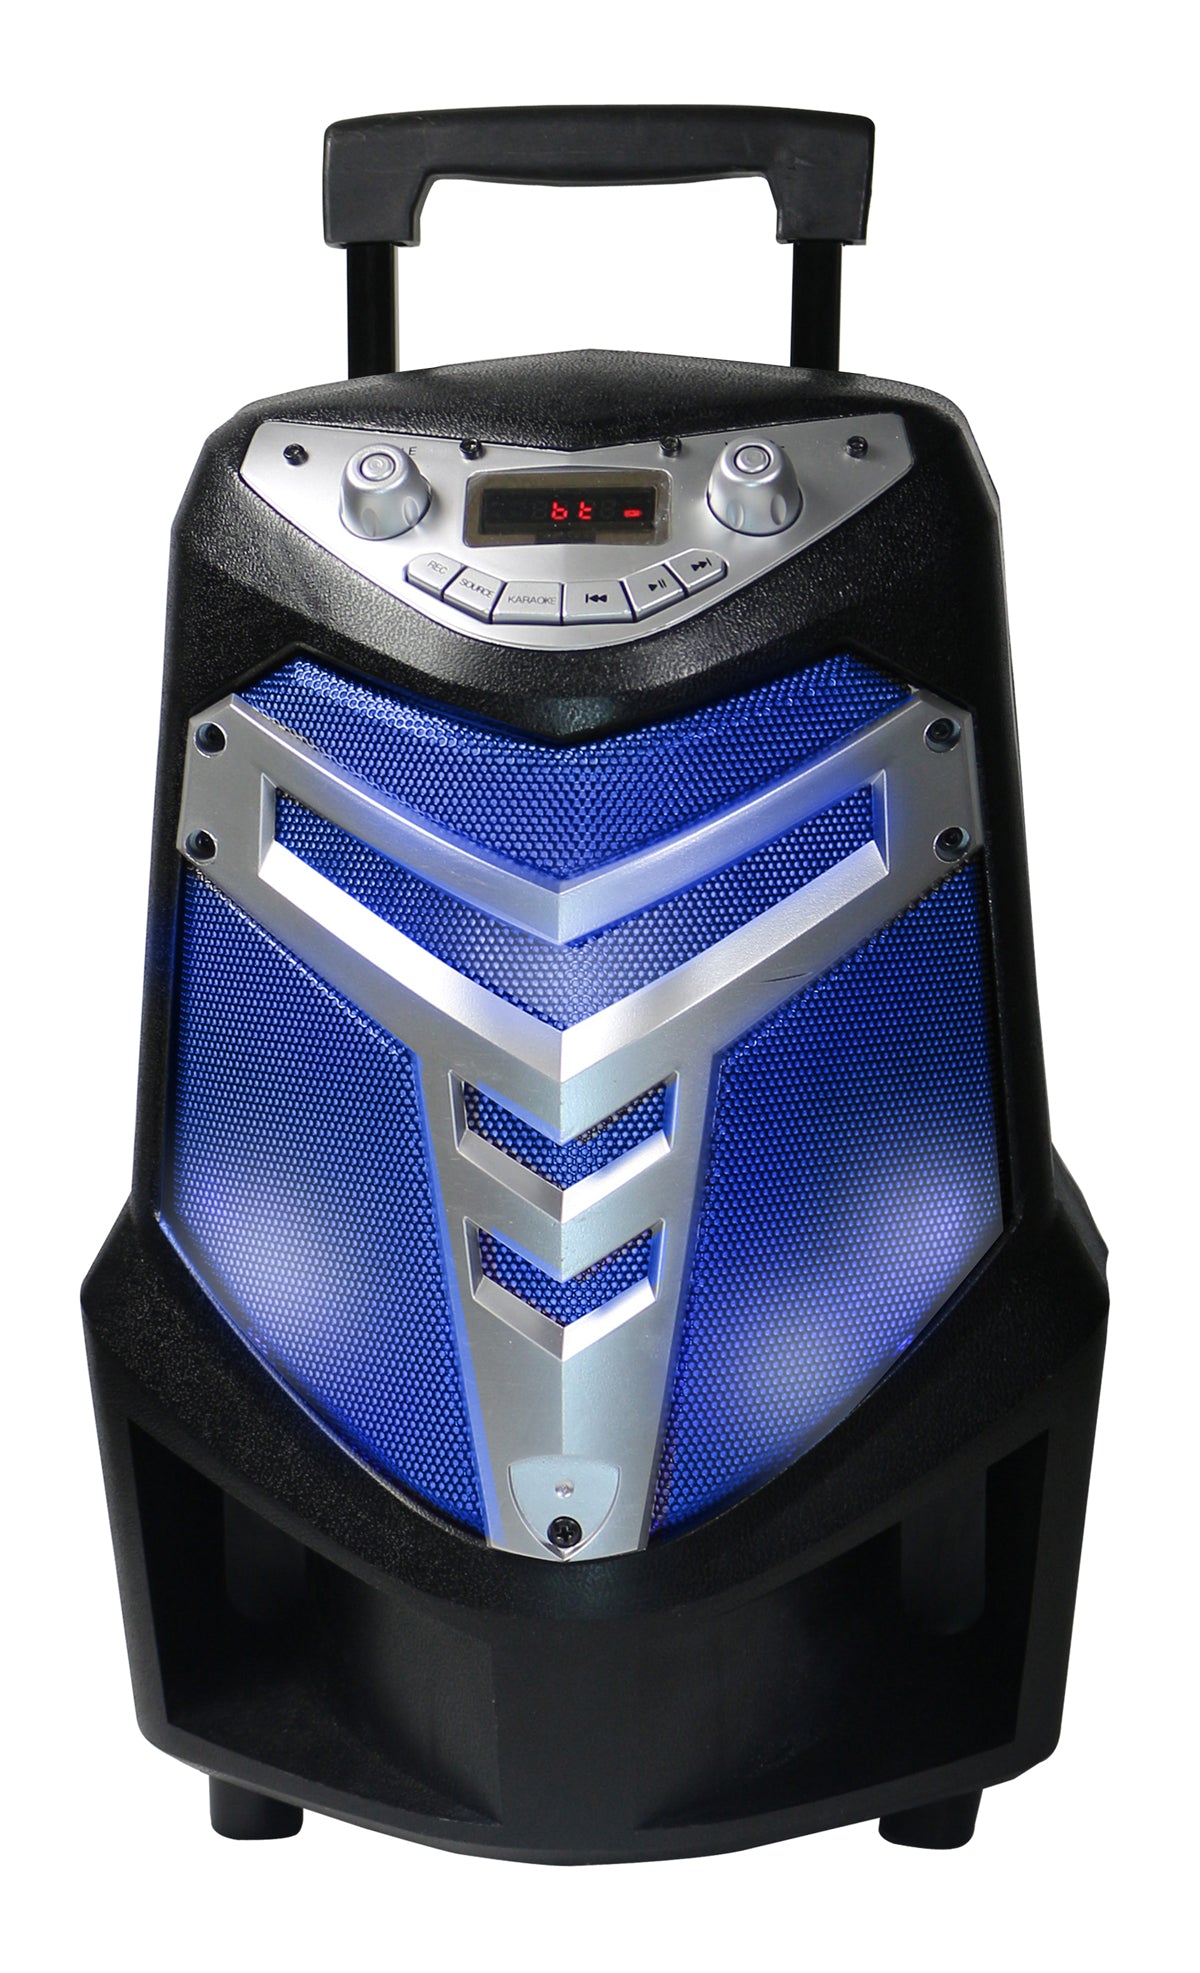 Fully AmplifiedPortable 1200 WattsPeak Power 6.5” Speaker with led light